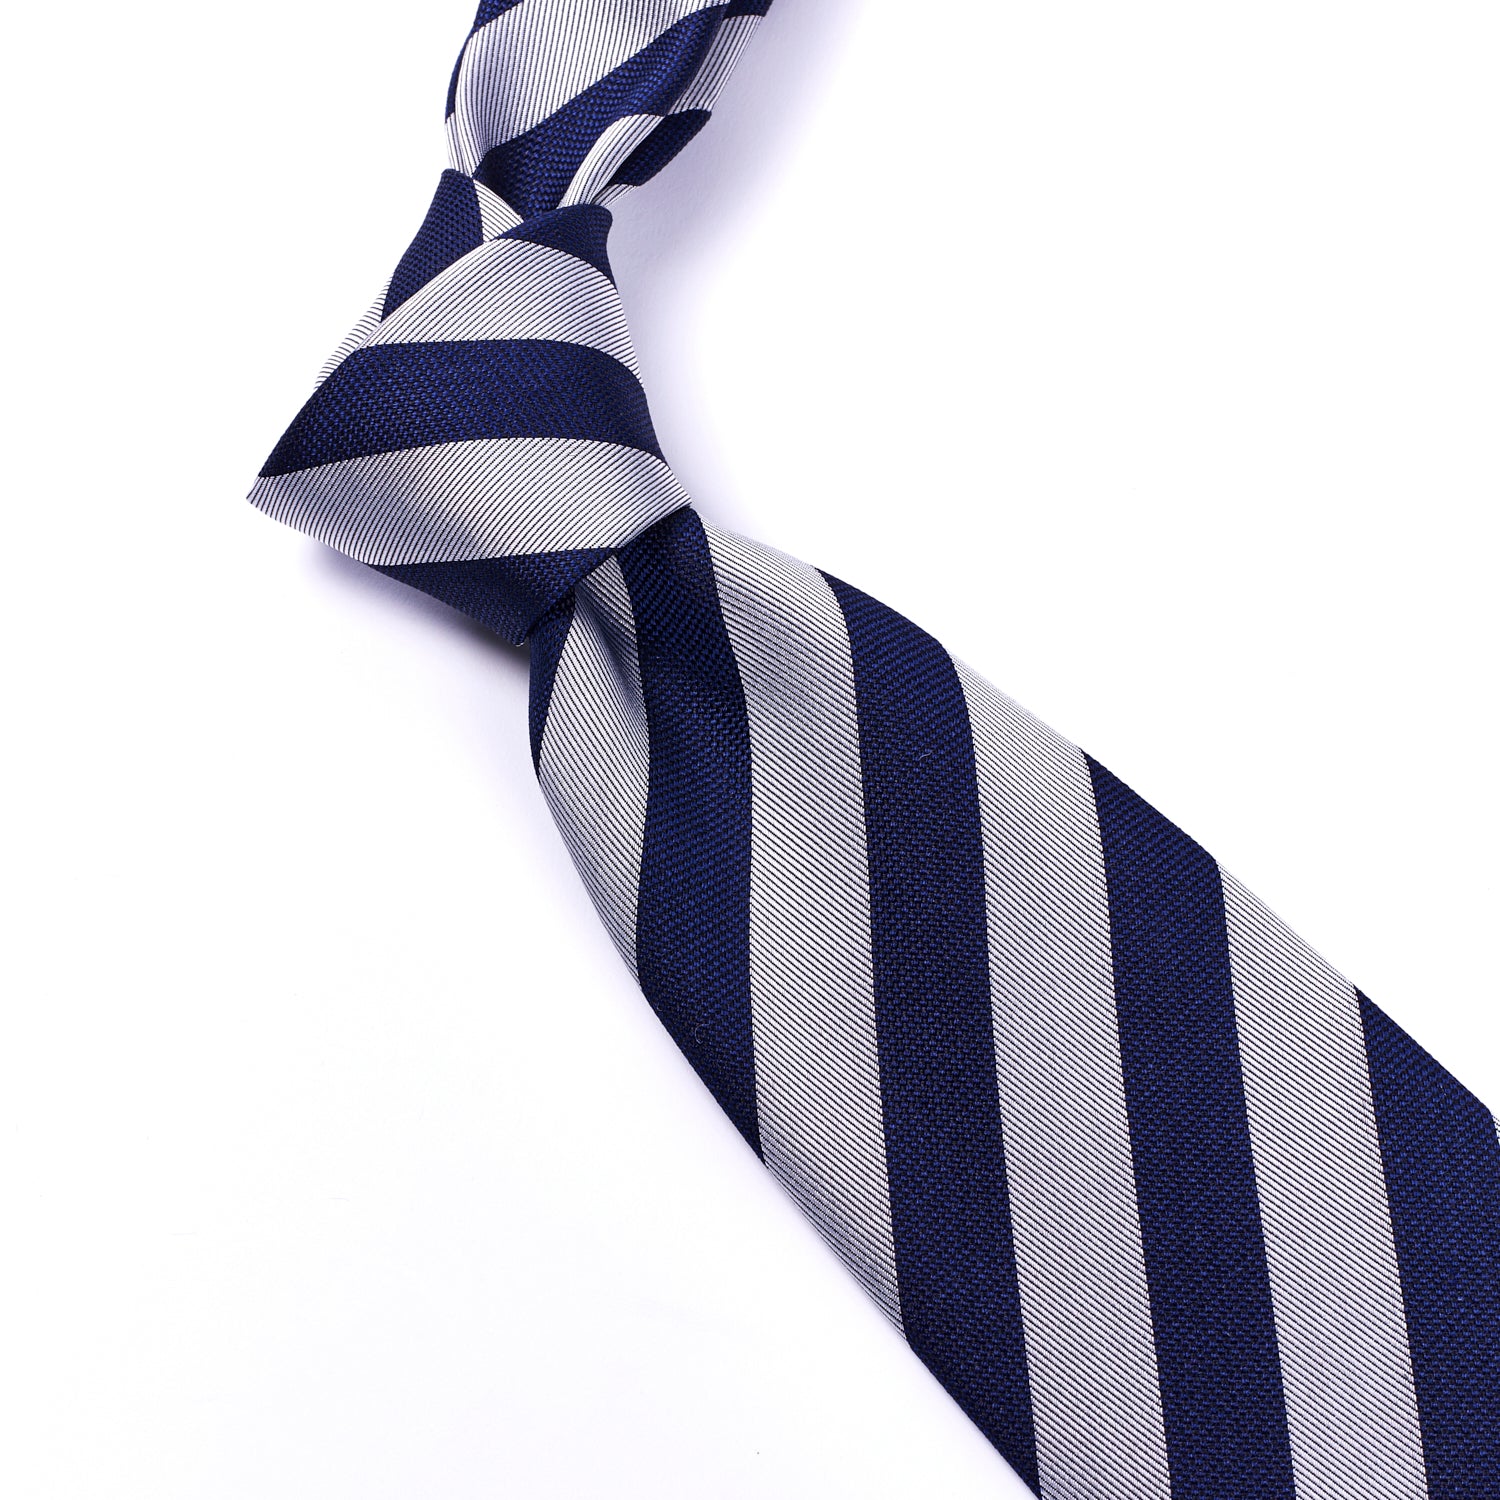 Sovereign Grade Woven Navy and Silver Rep Tie, 150 cm